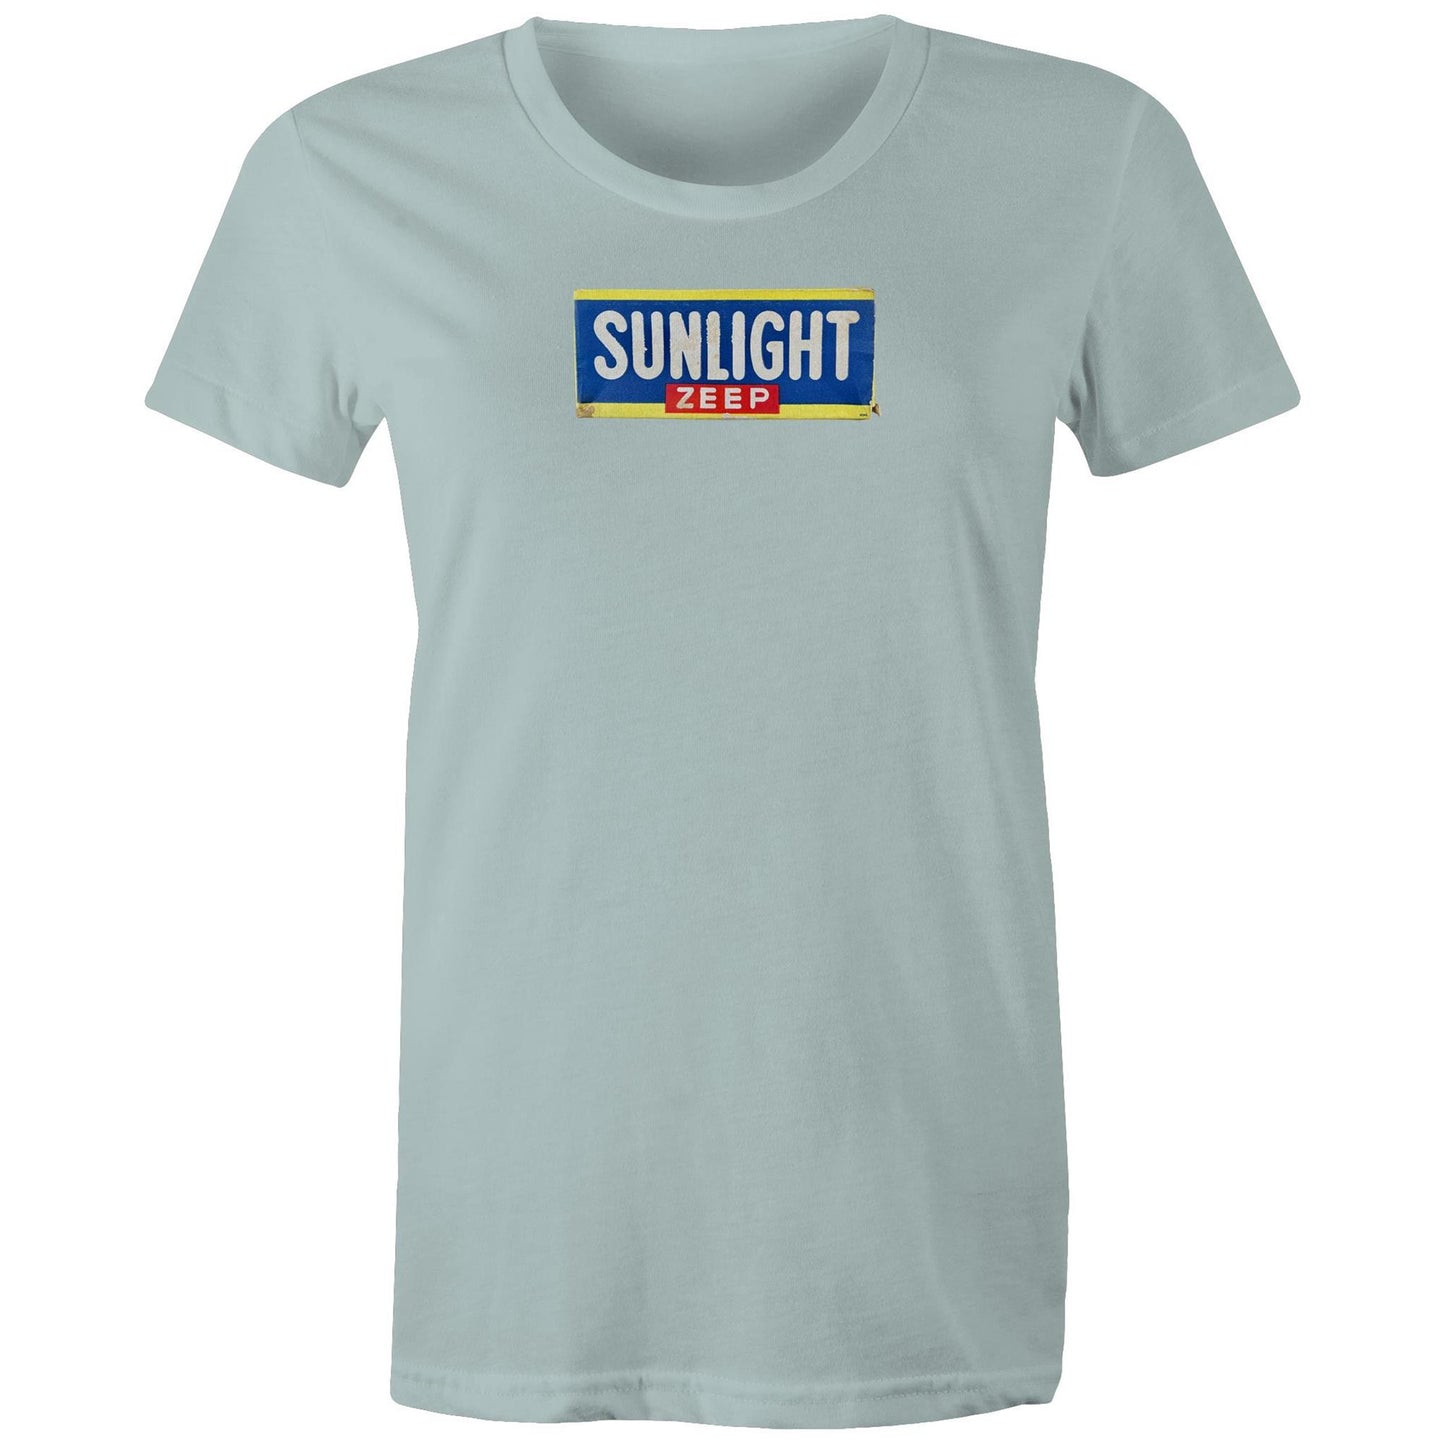 Sunlight Zeep T Shirts for Women